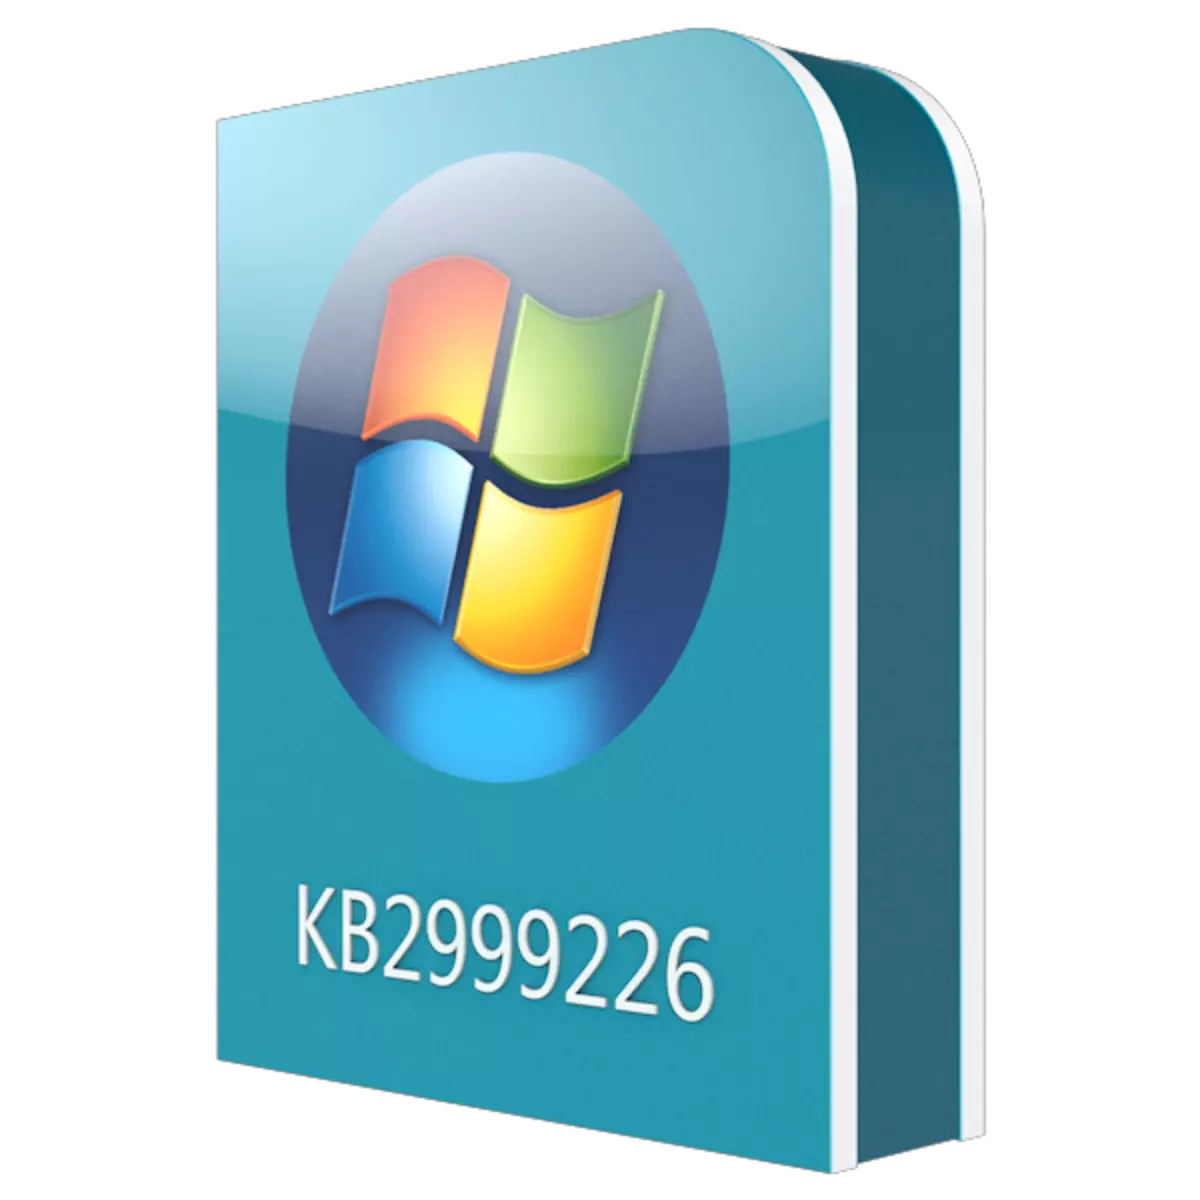 Download opdatering KB2999226 til Windows 7